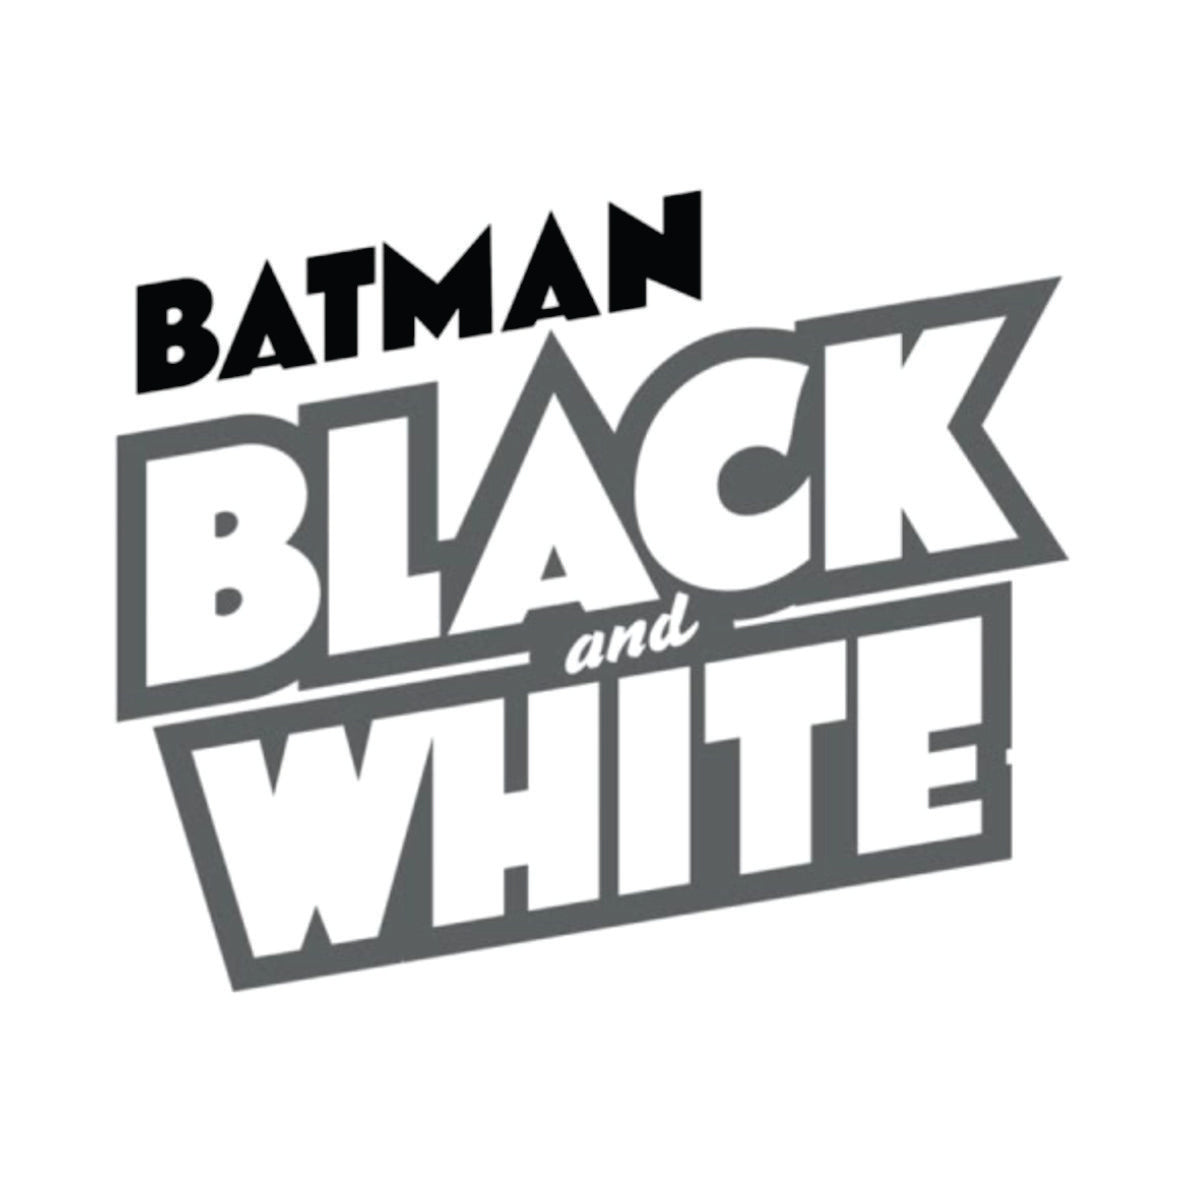 Batman Black & White